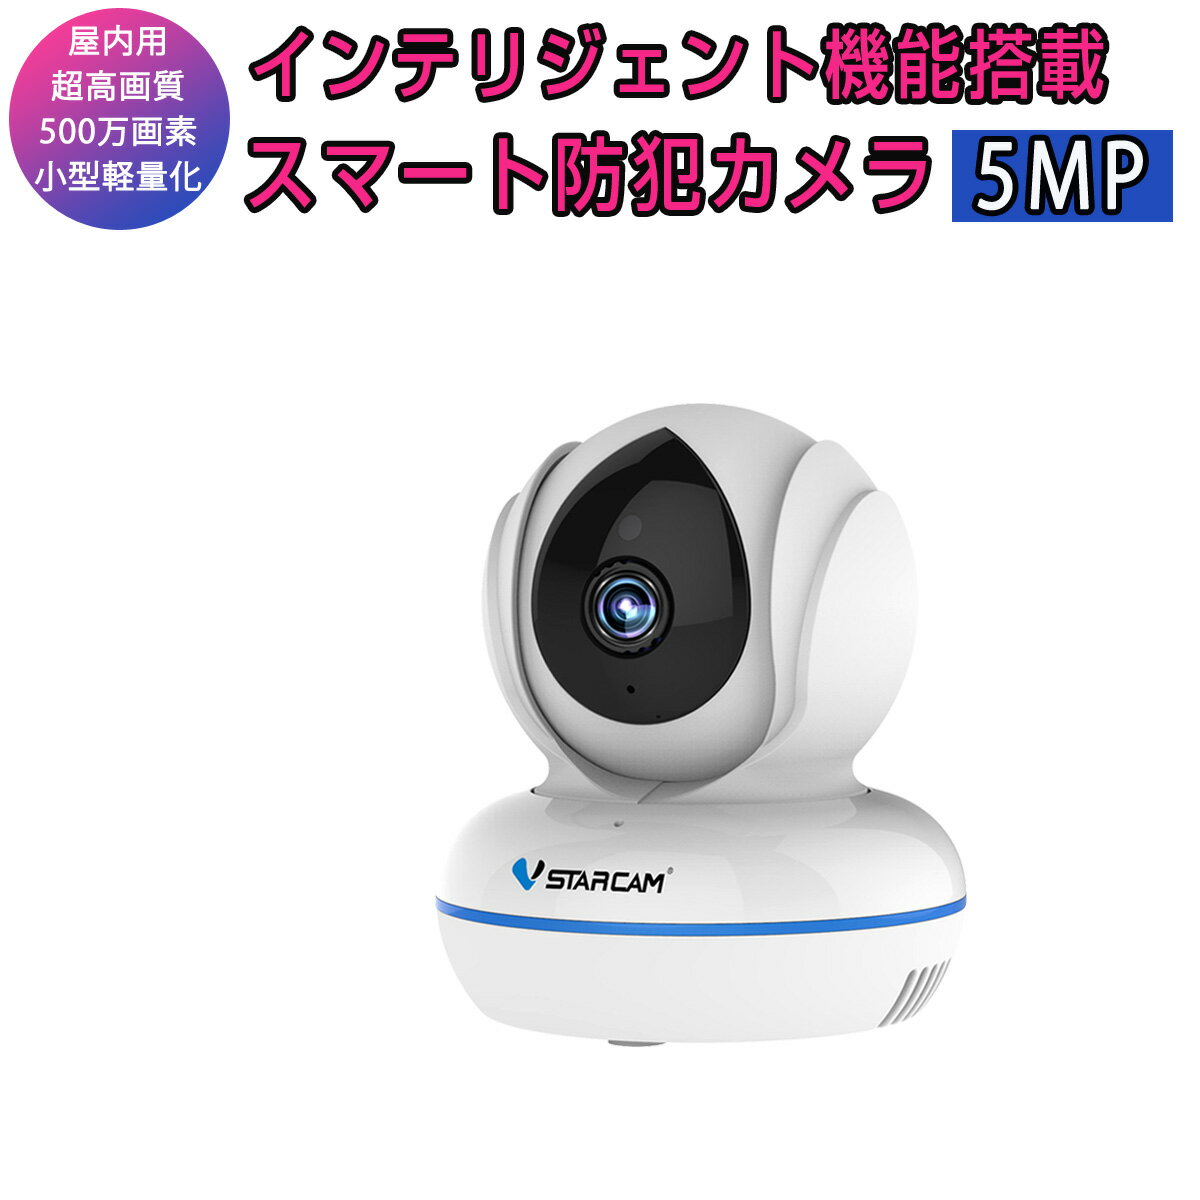 小型 防犯カメラ ワイヤレス C22Q VStarcam 5